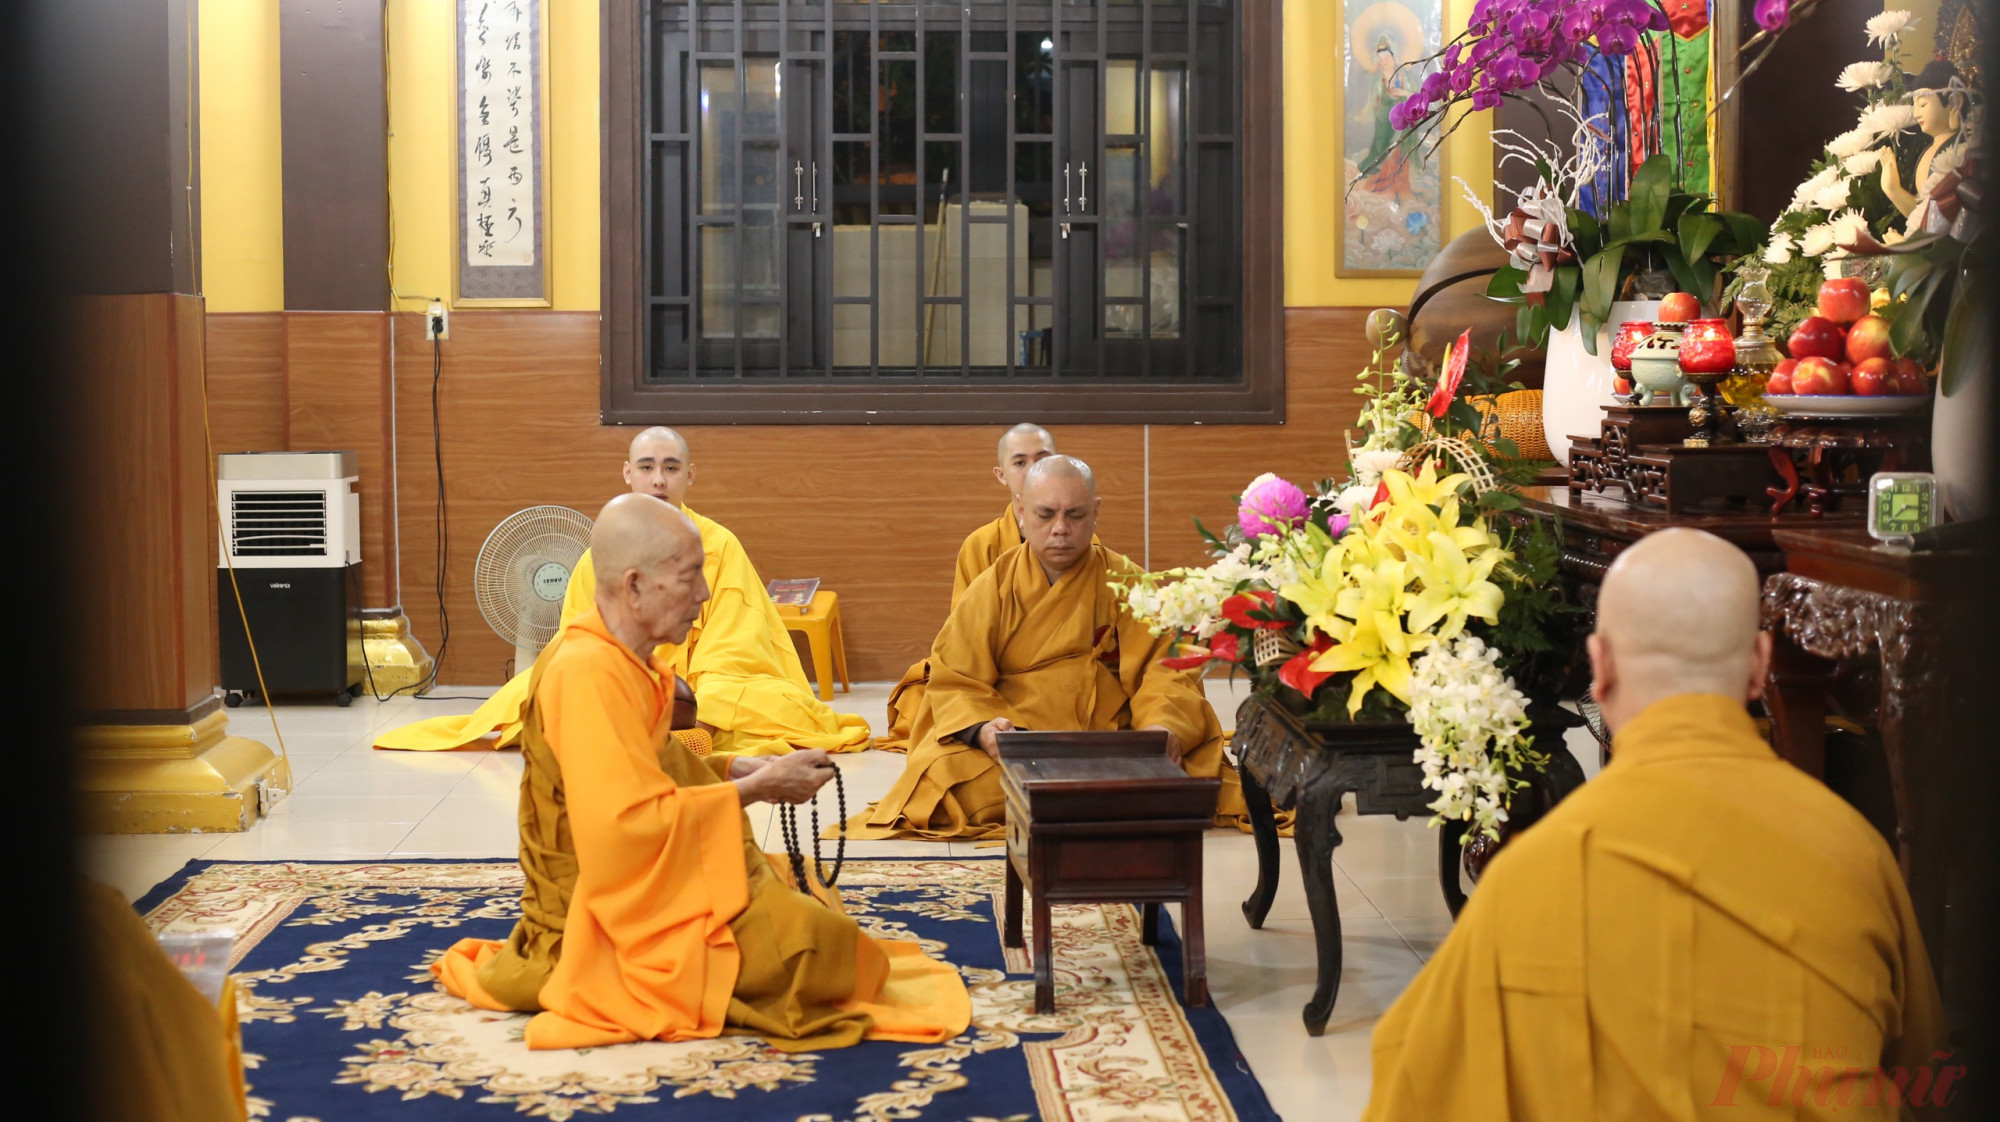 Vào trưa cùng ngày chùa Long Bửu cũng đã tổ chức một lễ cầu an cầu siêu.